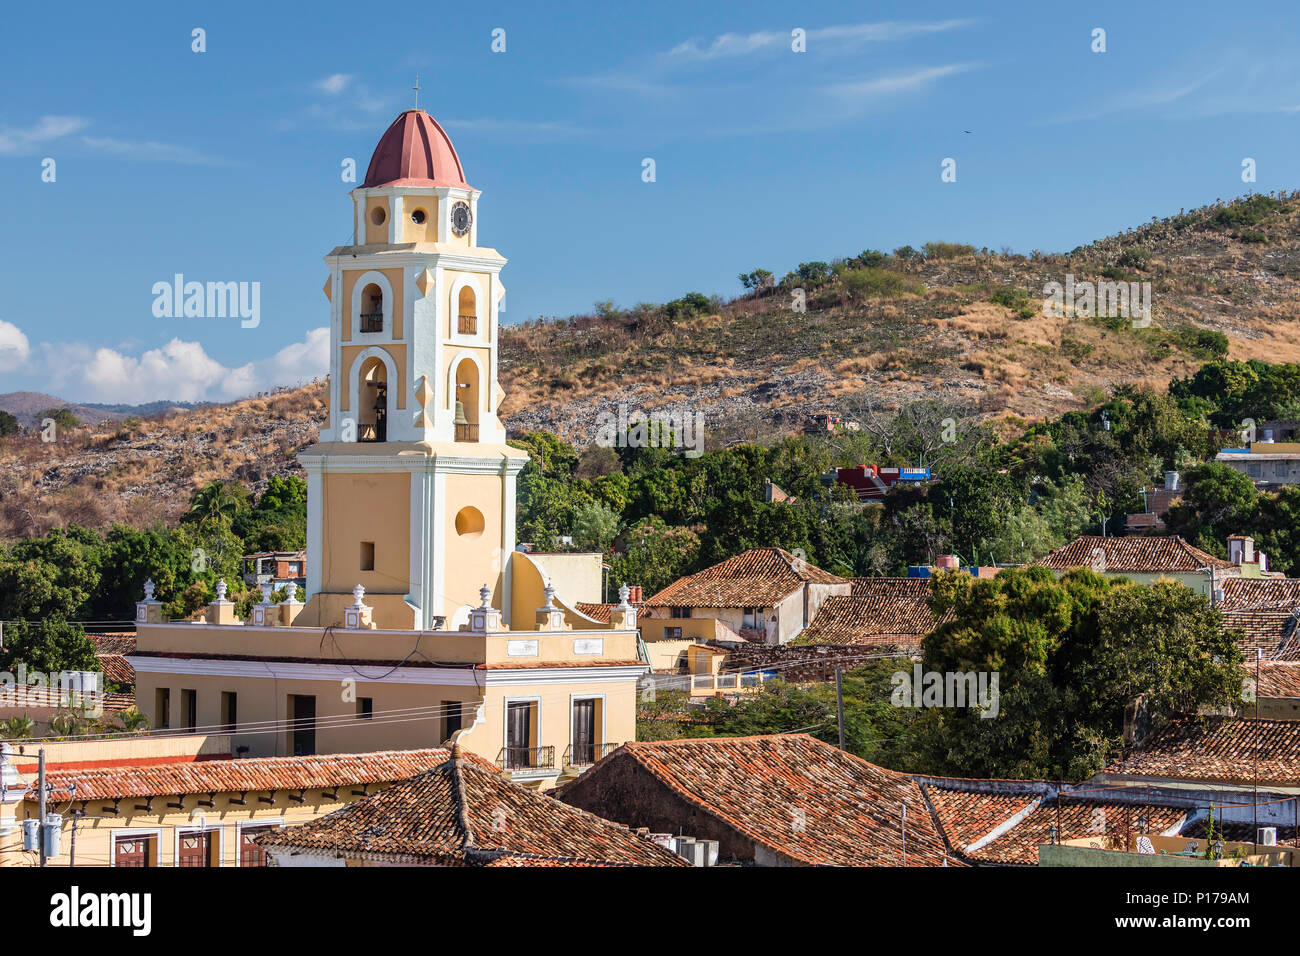 Der Glockenturm der Convento de San Francisco in der UNESCO Weltkulturerbe Stadt Trinidad, Kuba. Stockfoto